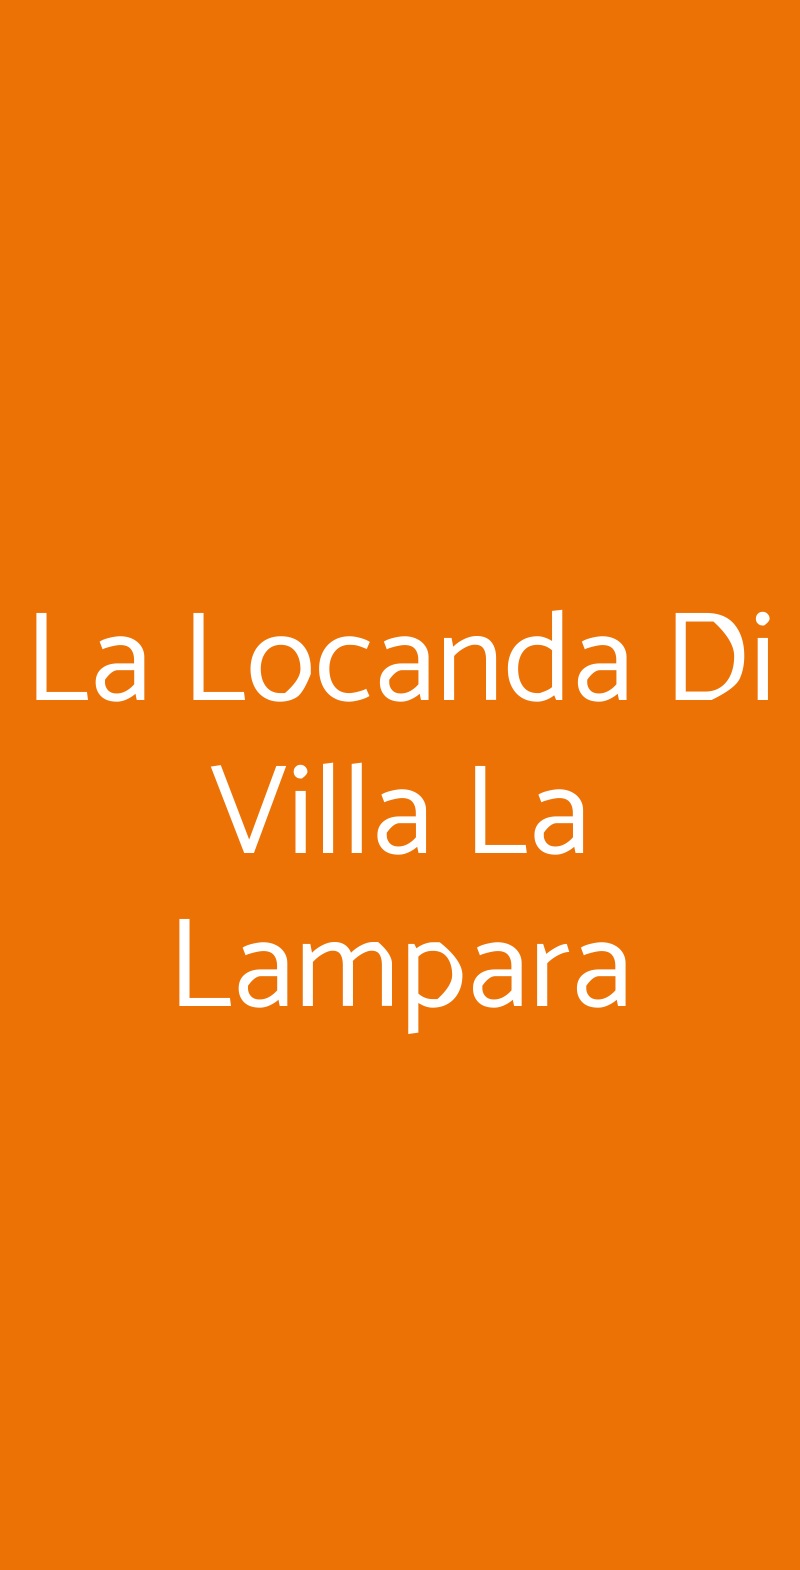 La Locanda Di Villa La Lampara Giugliano in Campania menù 1 pagina